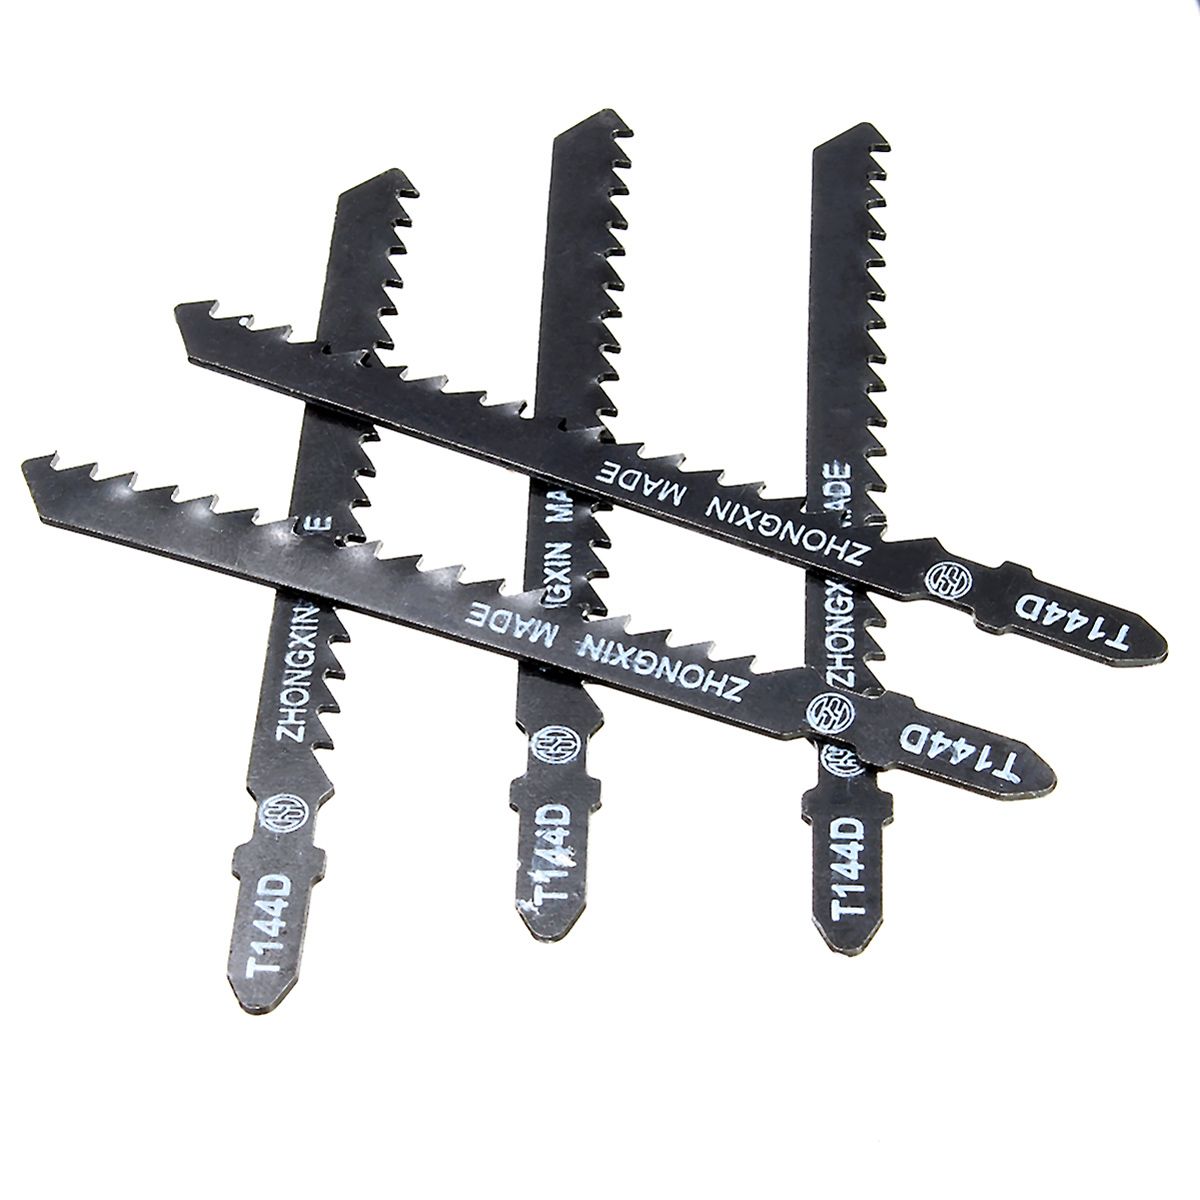 10Pcs-Jigsaw-Blades-Wood-Cutter-T144D-Fit-Bosch-Hitachi-Makita-Festool-1151918